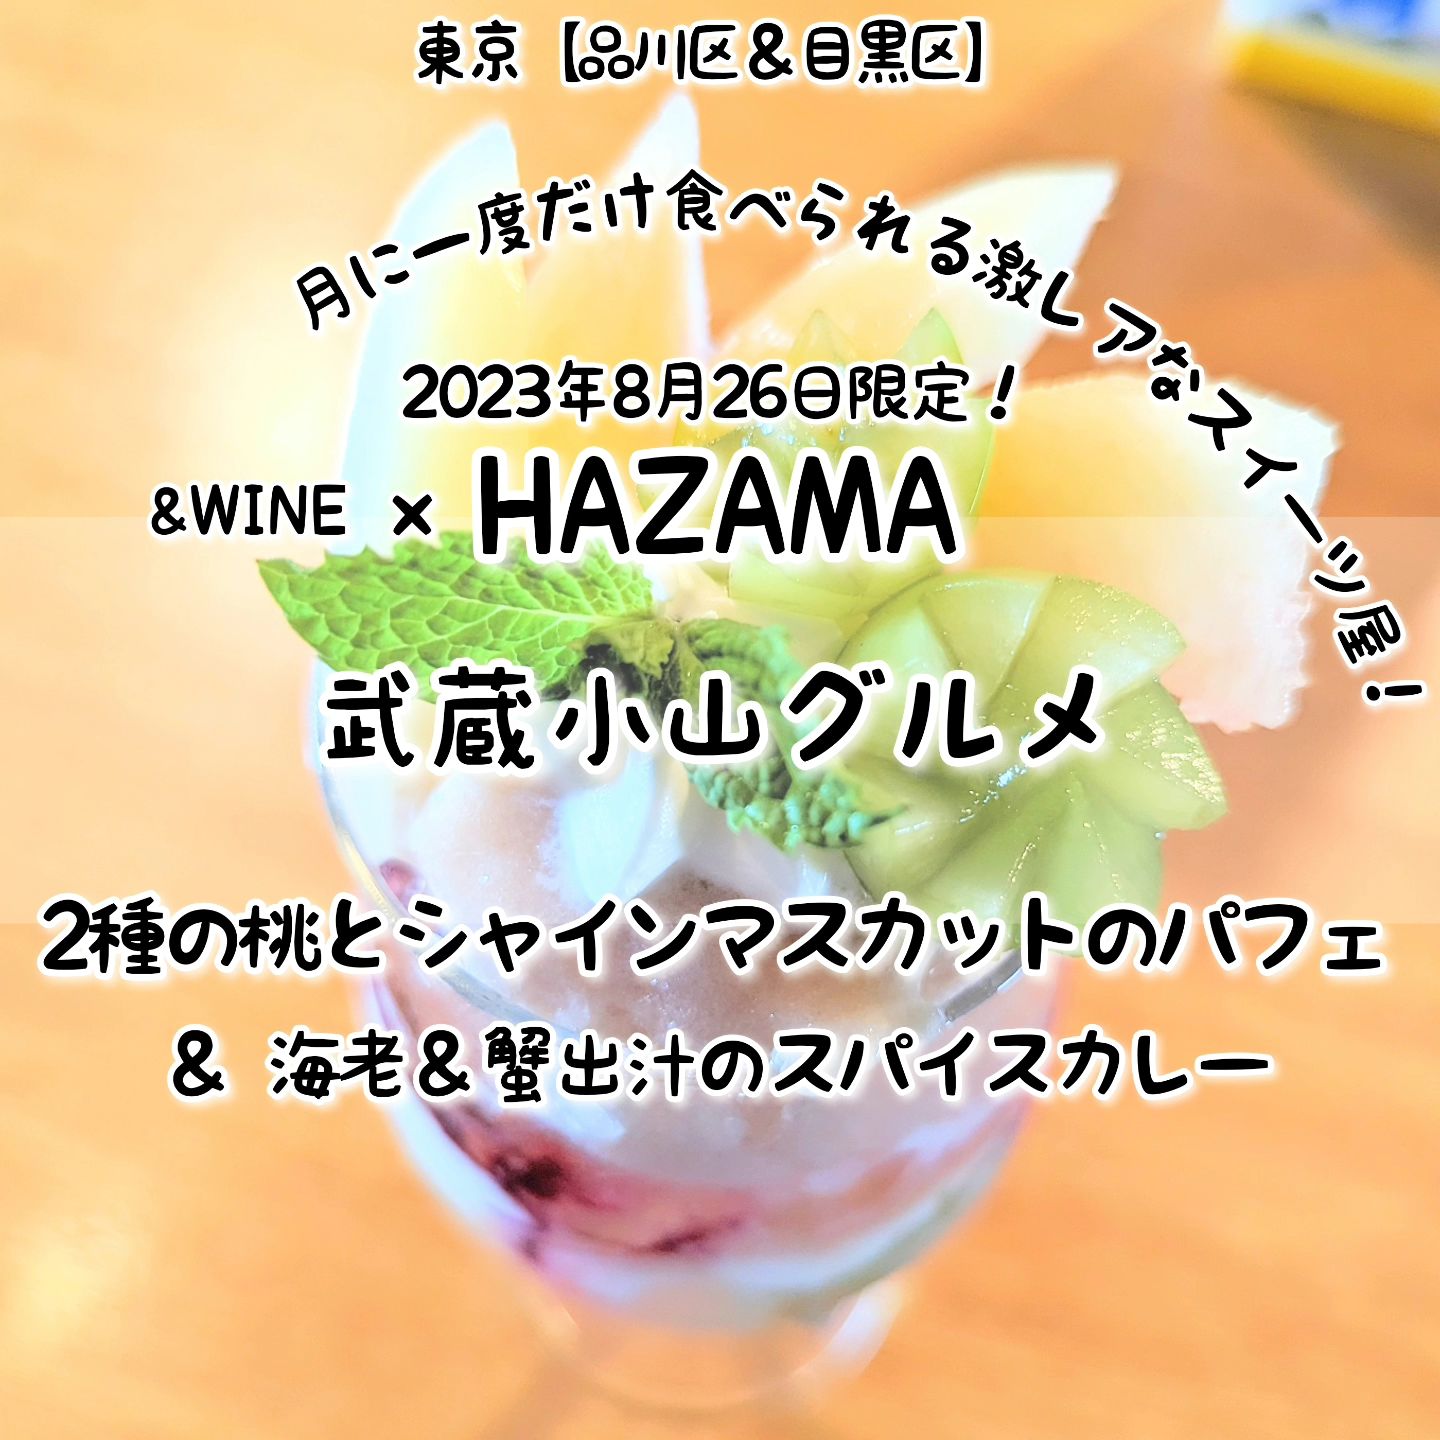 #武蔵小山グルメ情報 #hazama #2種の桃とシャインマスカットのパフェ あっさり系－－☆－－こってり系オールド系－－－☆－ニュー系おもいで度－－－☆－ #侍猫度甘熟桃とシャインマスカットがジュワっと贅沢なパフェが美味しい！2種類の桃を贅沢に使いつつ、さらにシャインマスカットまで味わえる無敵のフルーツ盛りとなっておりまして、食べすすめてもゴロゴロフルーツがたっぷりで満足度高い仕上がりとなっております！一緒にいただいたカレーにつきましては、欲張りハーフ＆ハーフ盛りとなっておりまして、海老＆蟹出汁のスパイスカレーとカツオ出汁のポークキーマカレーを合わせたスペシャル仕様となっております！こちらは、2023年8月26日限定の「HAZAMA」と「＆WINE」のコラボメニューでございます。HAZAMAは、2022年2月から＆WINEの店舗でコラボ営業しているカフェで、季節のフルーツたっぷりのご褒美スイーツが月に1回だけ味わえる激レアなお店でございます。今のところ毎月1回くらいのペースで、季節フルーツたっぷりのスイーツを味わうことができる激レアなお店でございます。店内には、優しいお姉さんがおりまして、メニューの解説を聞きつつスイーツをいただけますので、初めての方もお一人様も安心して入れるお店でございます。来月の開催日は、まだ未定のようなので、去年食べ逃した方はインスタの告知を要チェックでございます！さらに今回のHAZAMAコラボと同時開催していた、ミチノイチバも毎月開催されるグルメイベントとなっておりまして、同ミチノサキビルの3階、4階でも激レアな武蔵小山グルメを味わうことができますぞ！HAZAMA@hazama_ur_space&WINE@andwine2021ミチノサキ@michinosaki_場所は、武蔵小山駅から26号線を目黒郵便局方面へ800mほど進んだ左手側にあるミチノサキビルの6階でございます。リューユニーク(パン屋)の入っているビルでございますね。【侍猫へ連絡】グルメ情報やらムサコ話などなどお気軽にインスタのメッセージください！もちろんインスタ投稿用のPR案件などのお仕事もぜひご連絡お願いいたします！【侍猫を応援】「フォロー」＆「いいね」＆「保存」どうぞよろしくお願いします！ぜひプロフィールからリンクしてる武蔵小山グルメ情報サイトも時々見てやってください！#武蔵小山 #武蔵小山グルメ #西小山 #戸越銀座 #不動前 #碑文谷 #戸越 #中延 #荏原中延 #目黒本町 #下目黒 #品川区 #品川区グルメ #目黒区 #目黒区グルメ #東京グルメ #東京散歩 #東京観光 #東京デート #東京旅行#tokyotrip #tokyofood #japantravel#武蔵小山スイーツ #東京スイーツ #スイーツ